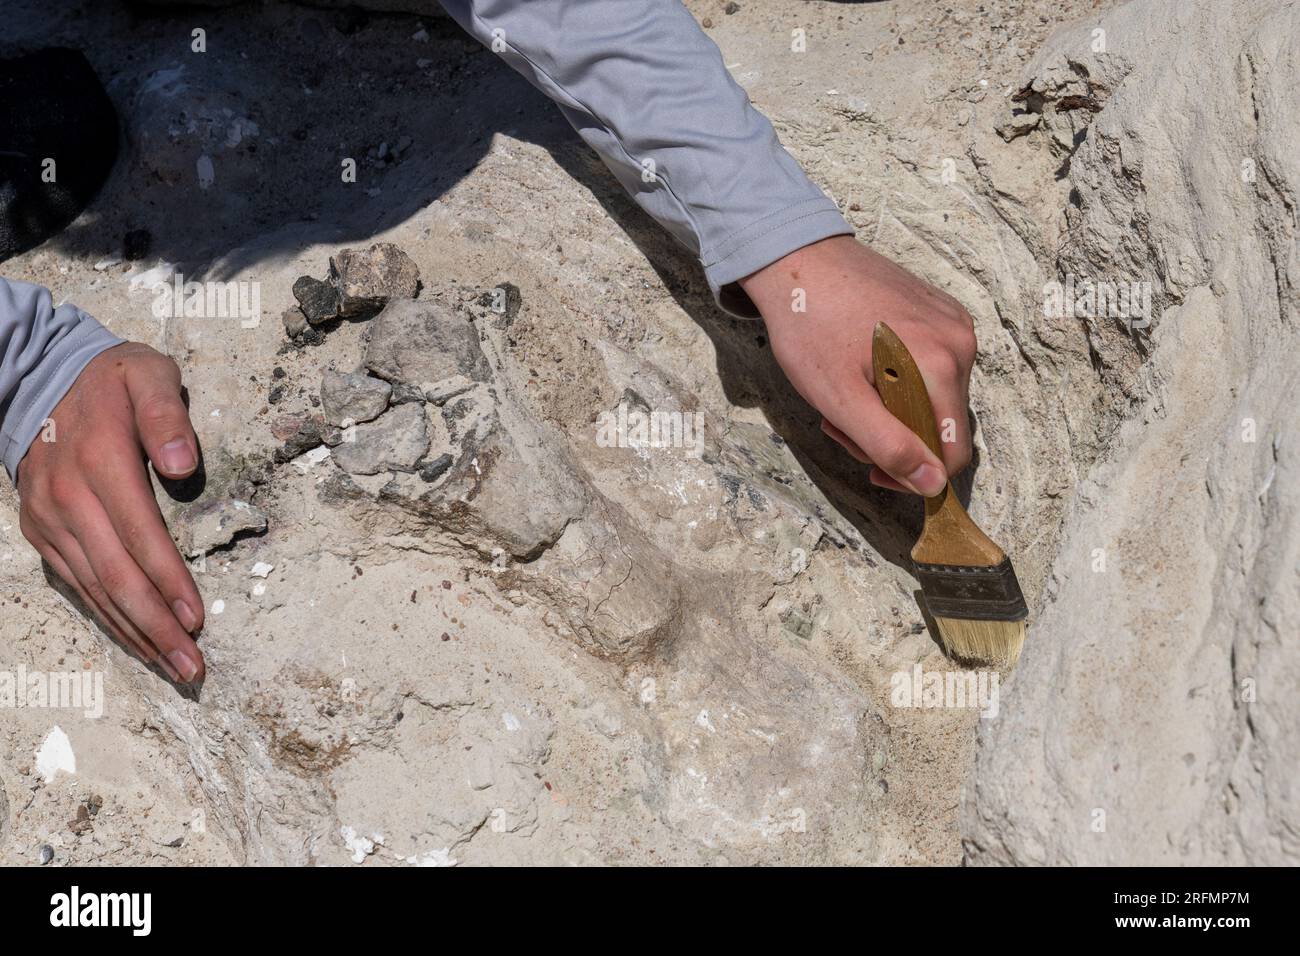 Fossile osseux de dinosaure enfermé dans du plâtre pour être retiré de la carrière de dinosaures Burpee dans le désert de Caineville près de Hanksville, Utah. Banque D'Images